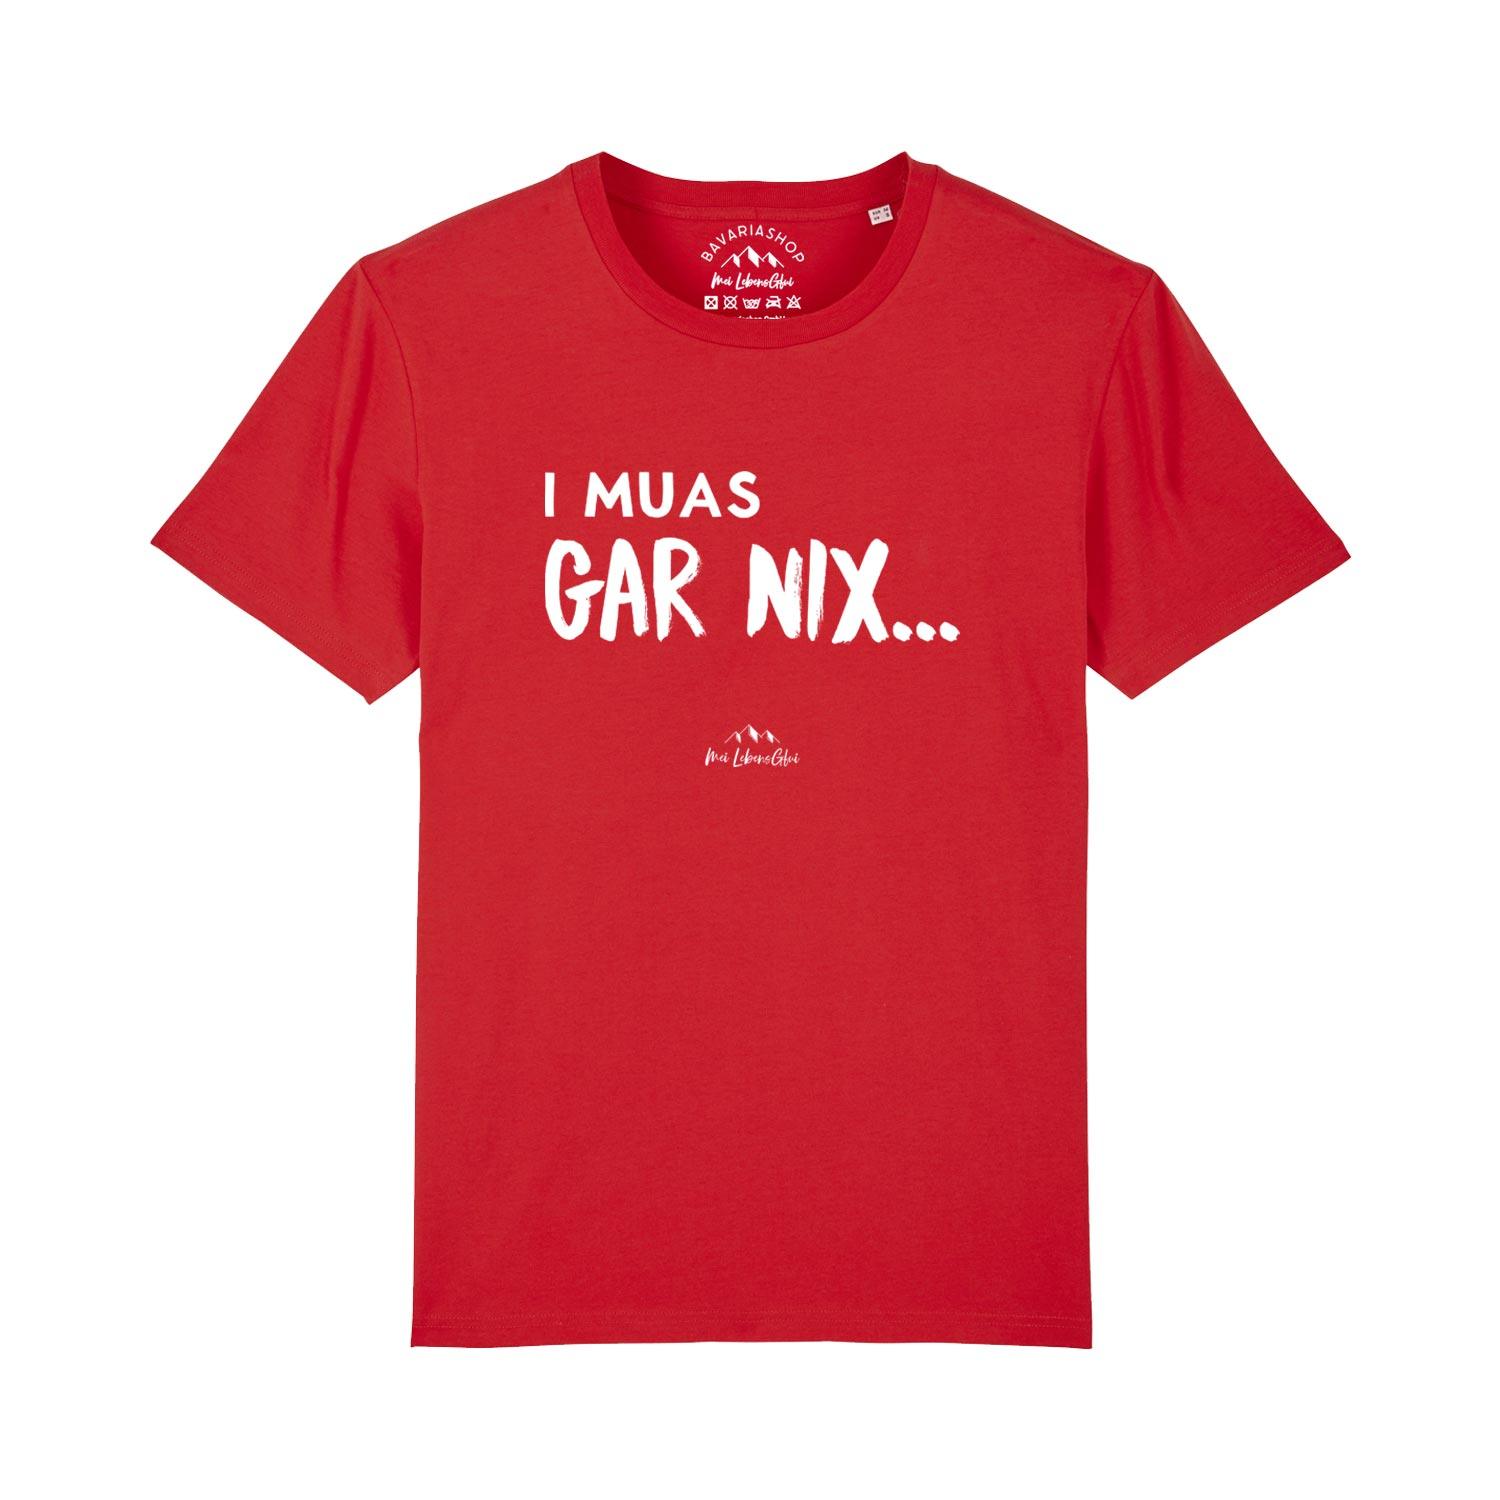 Herren T-Shirt "I muas gar nix…" - bavariashop - mei LebensGfui